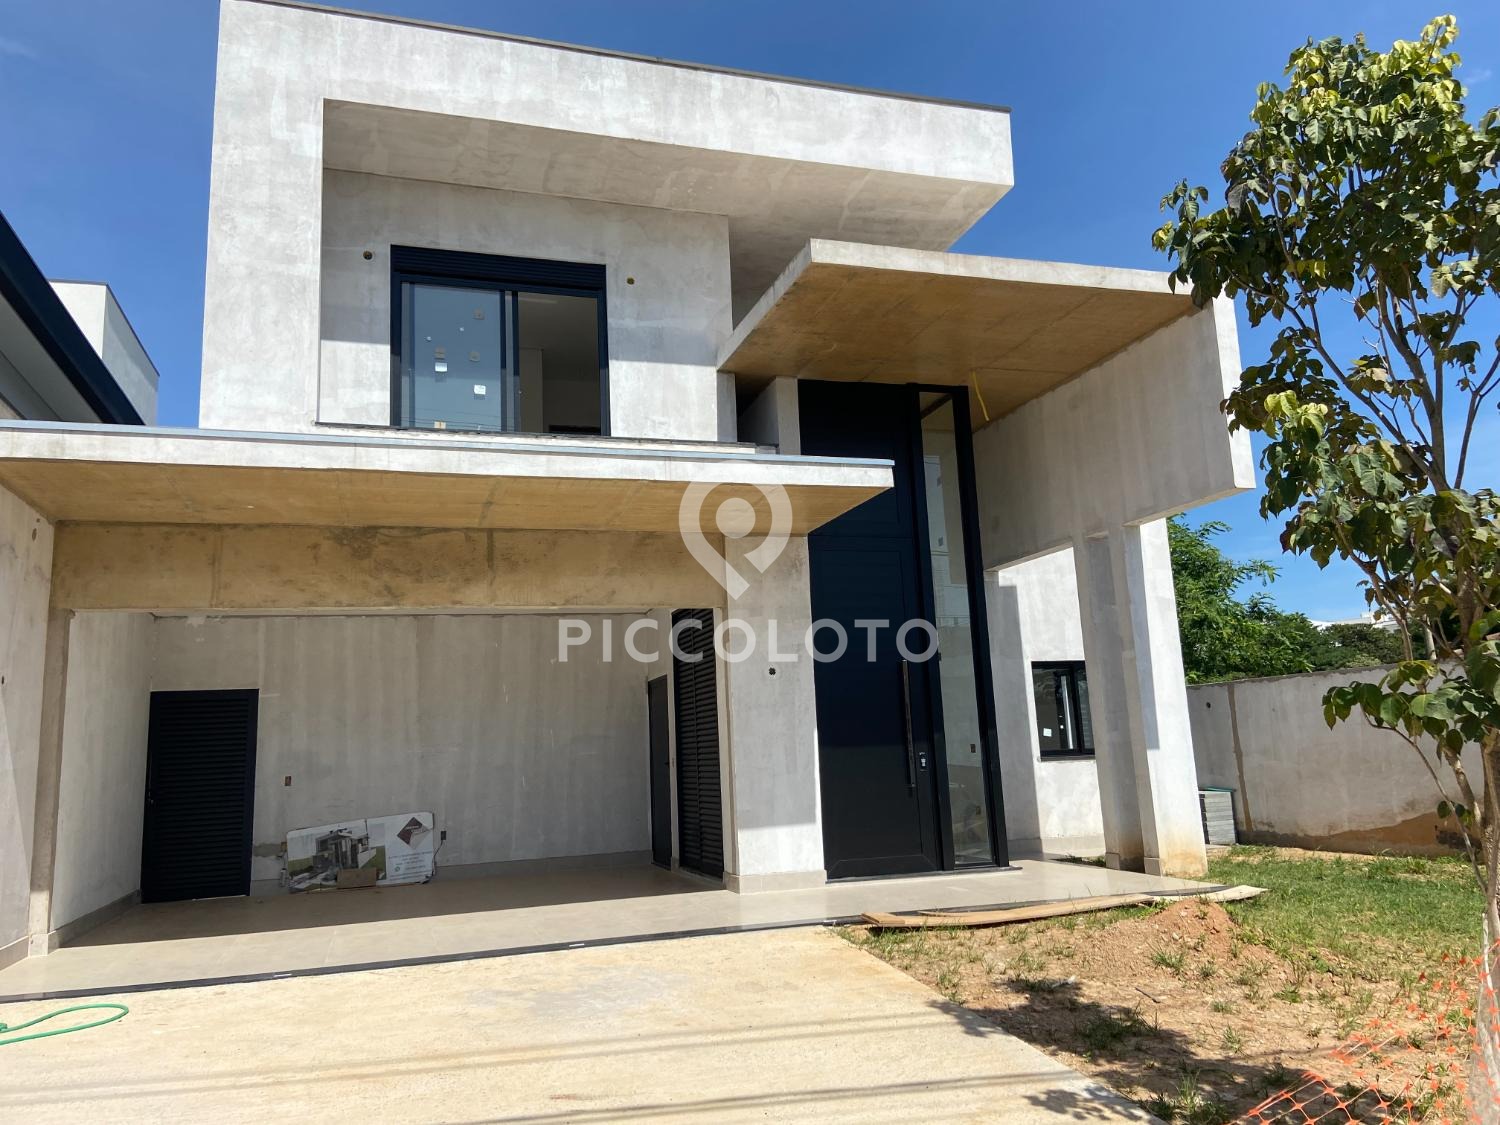 Piccoloto - Casa à venda no Loteamento Parque dos Alecrins em Campinas